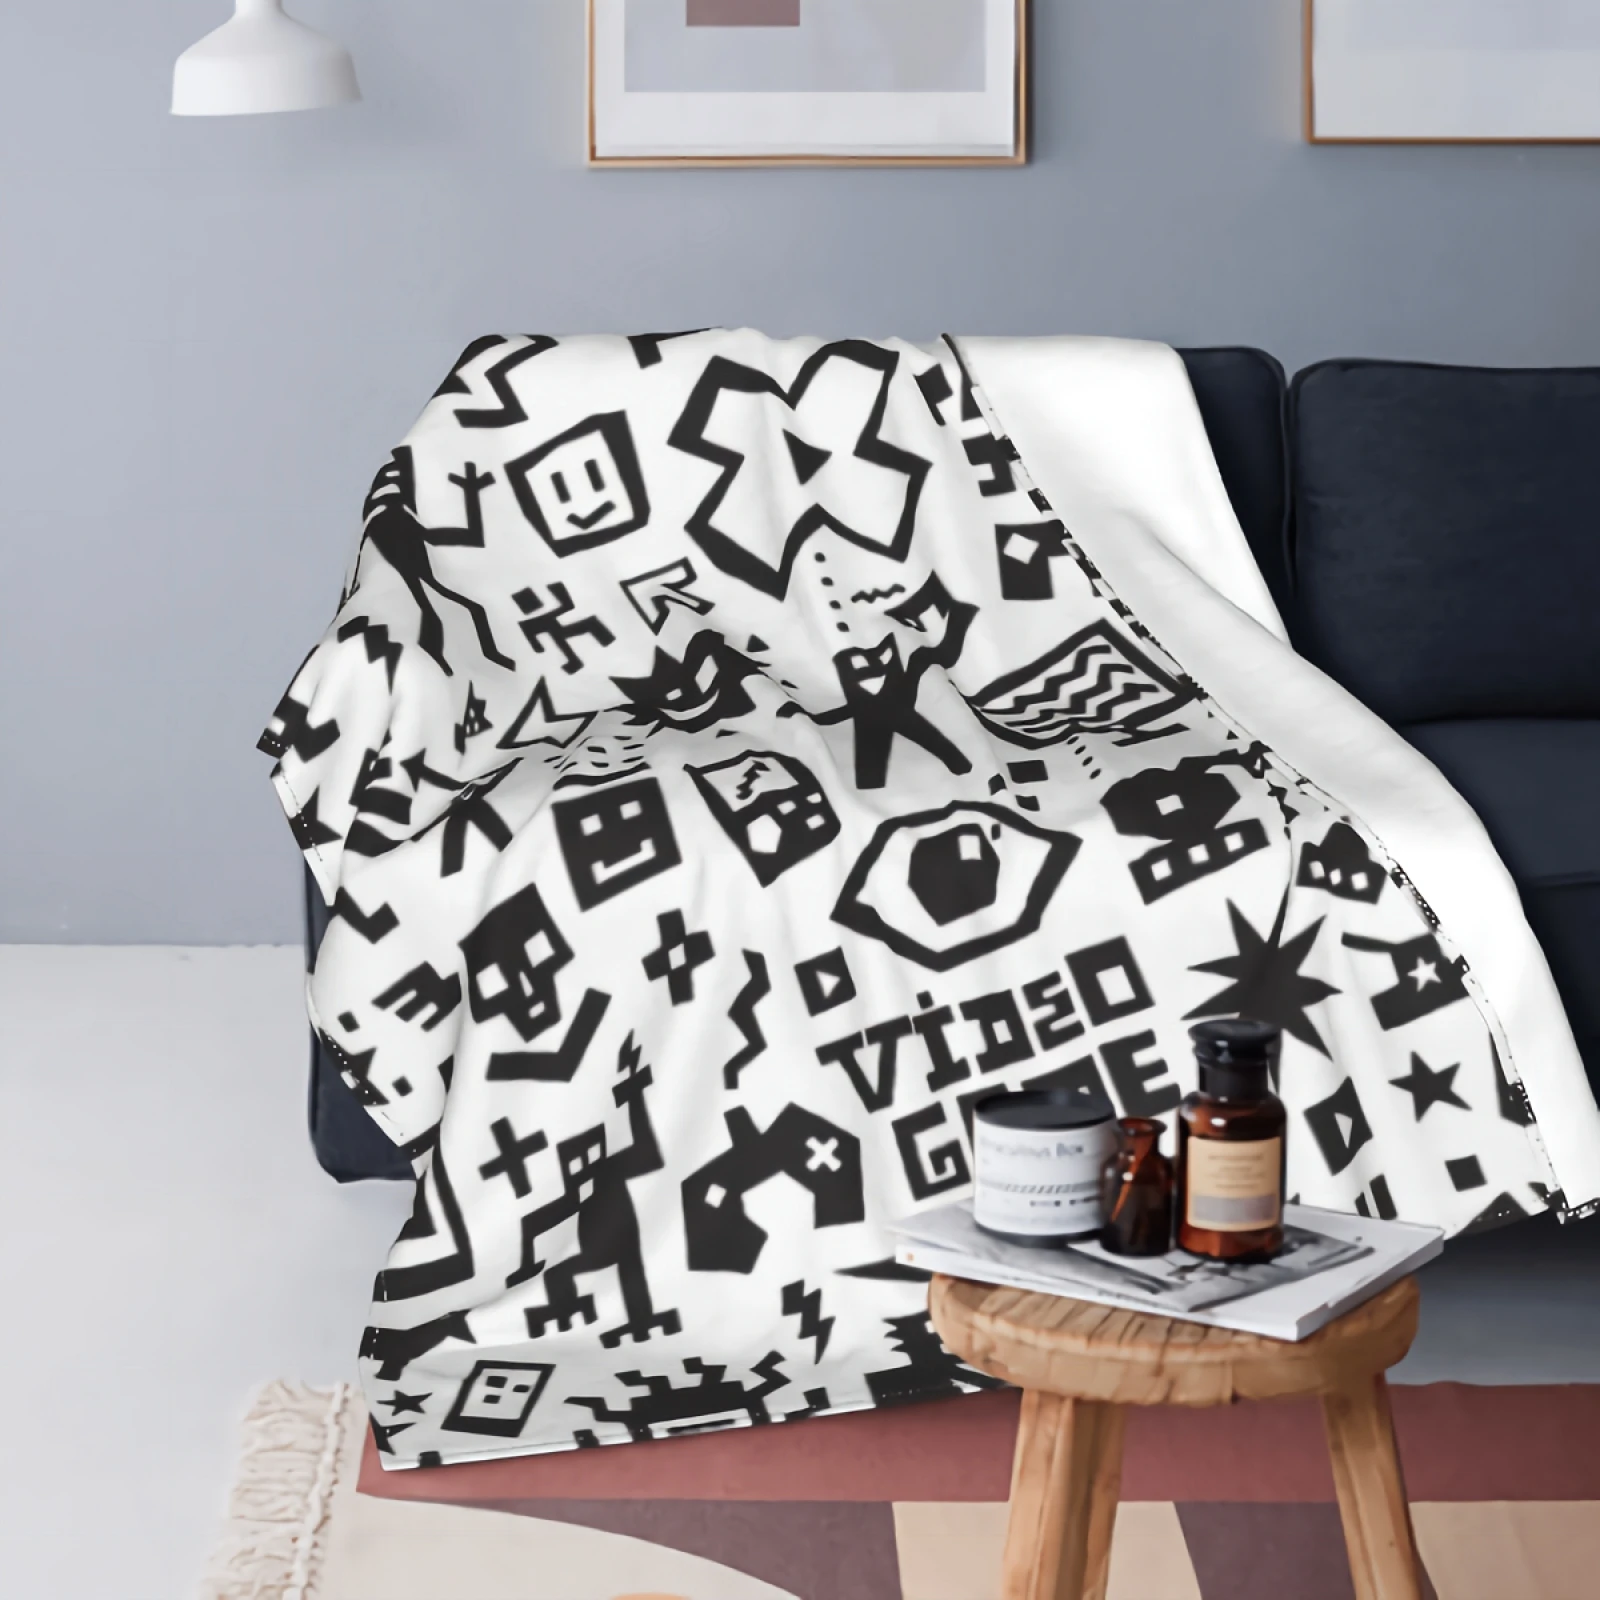 

Флисовое одеяло для видеоигр Anyako, супермягкое и уютное роскошное покрывало для кровати размером 80x60 дюймов